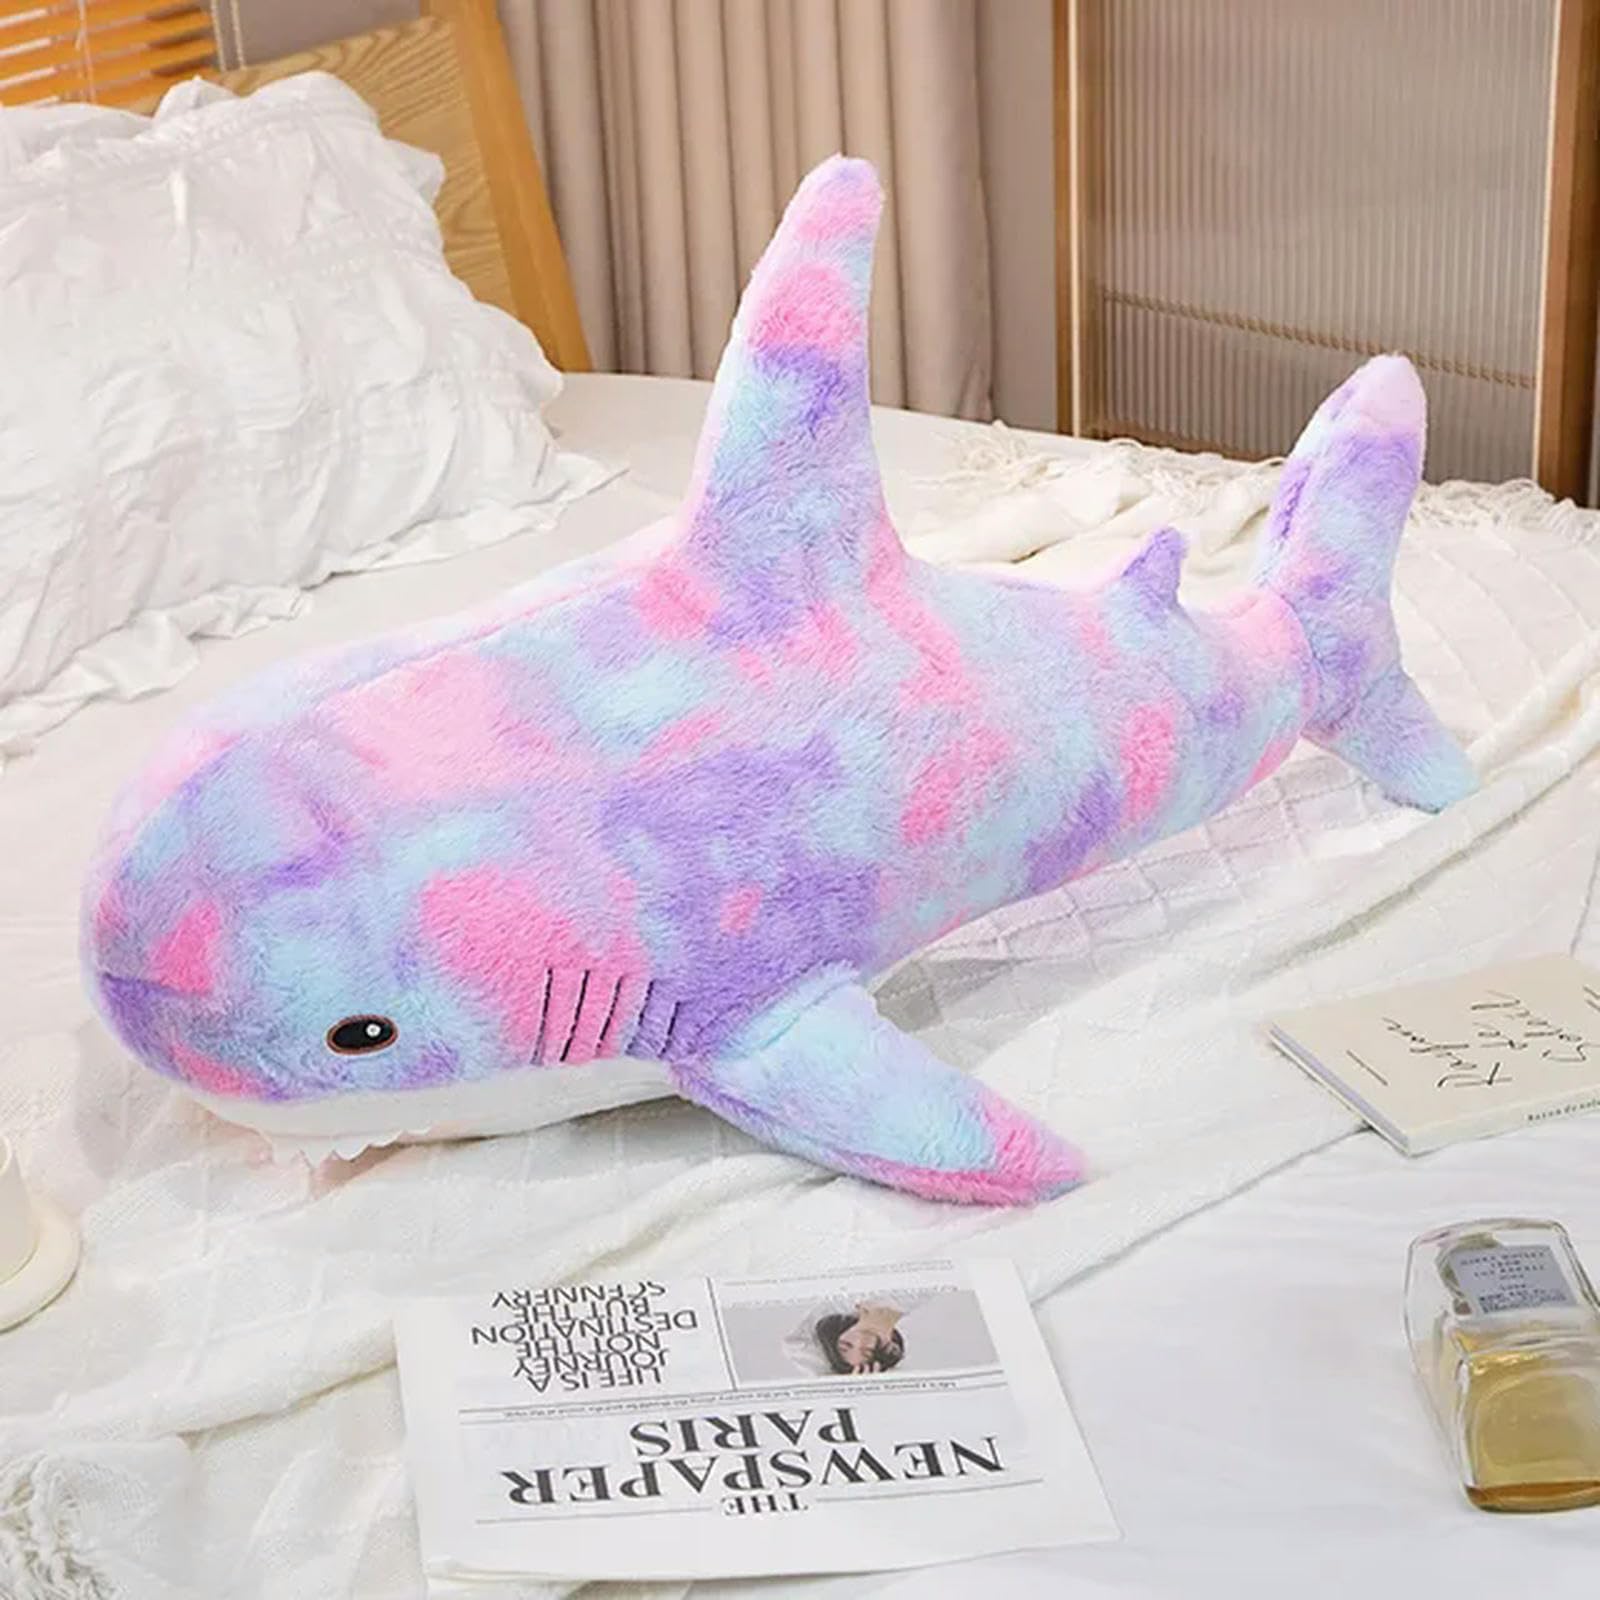 LfrAnk Regenbogen Hai Puppe Plüsch Spielzeug Ozean Riesen Tier Plüsch Matte Geschenk Geburtstag 60cm 1